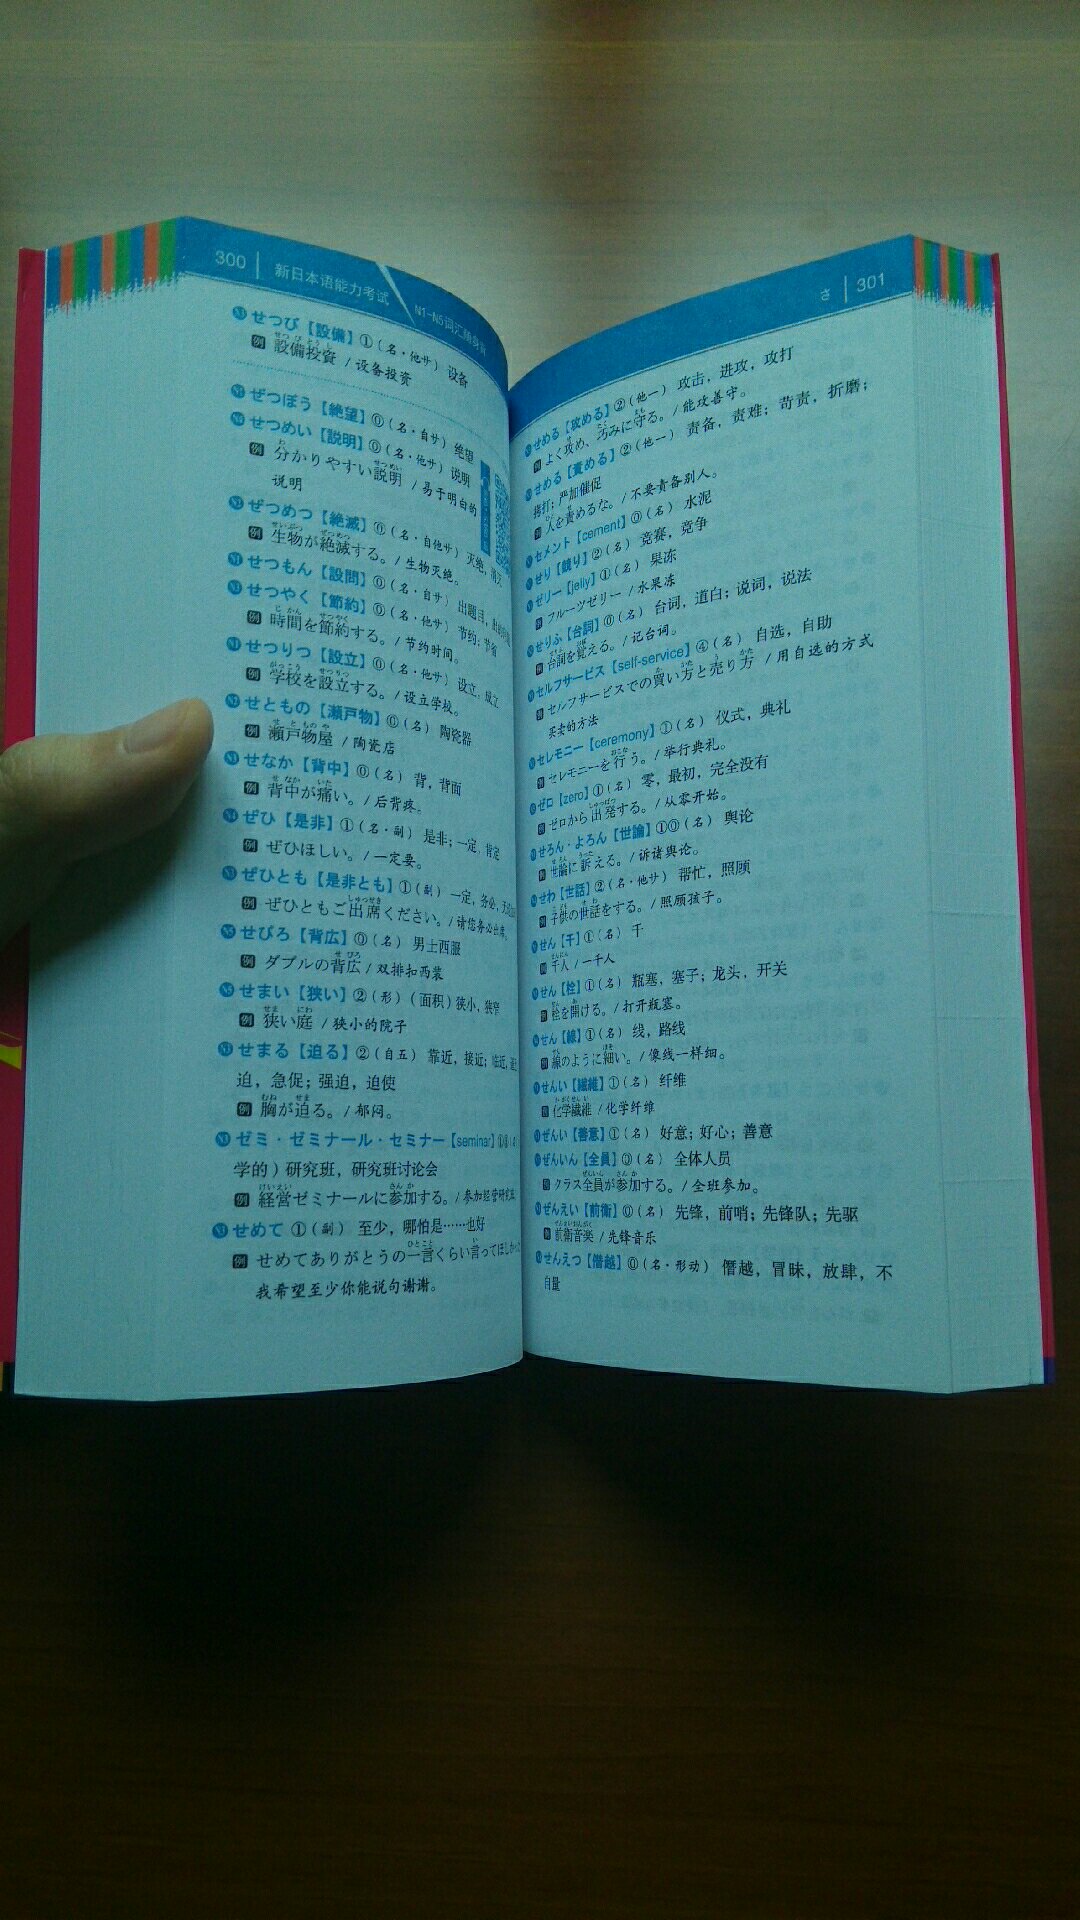 全新修订版，但目测和原版差不了多少。里面有大约10000词汇，并附有对应的常用词组和例句，但是非常短，适合随身背诵。如果要深入学习词汇，还得靠专业一点的日语词典。